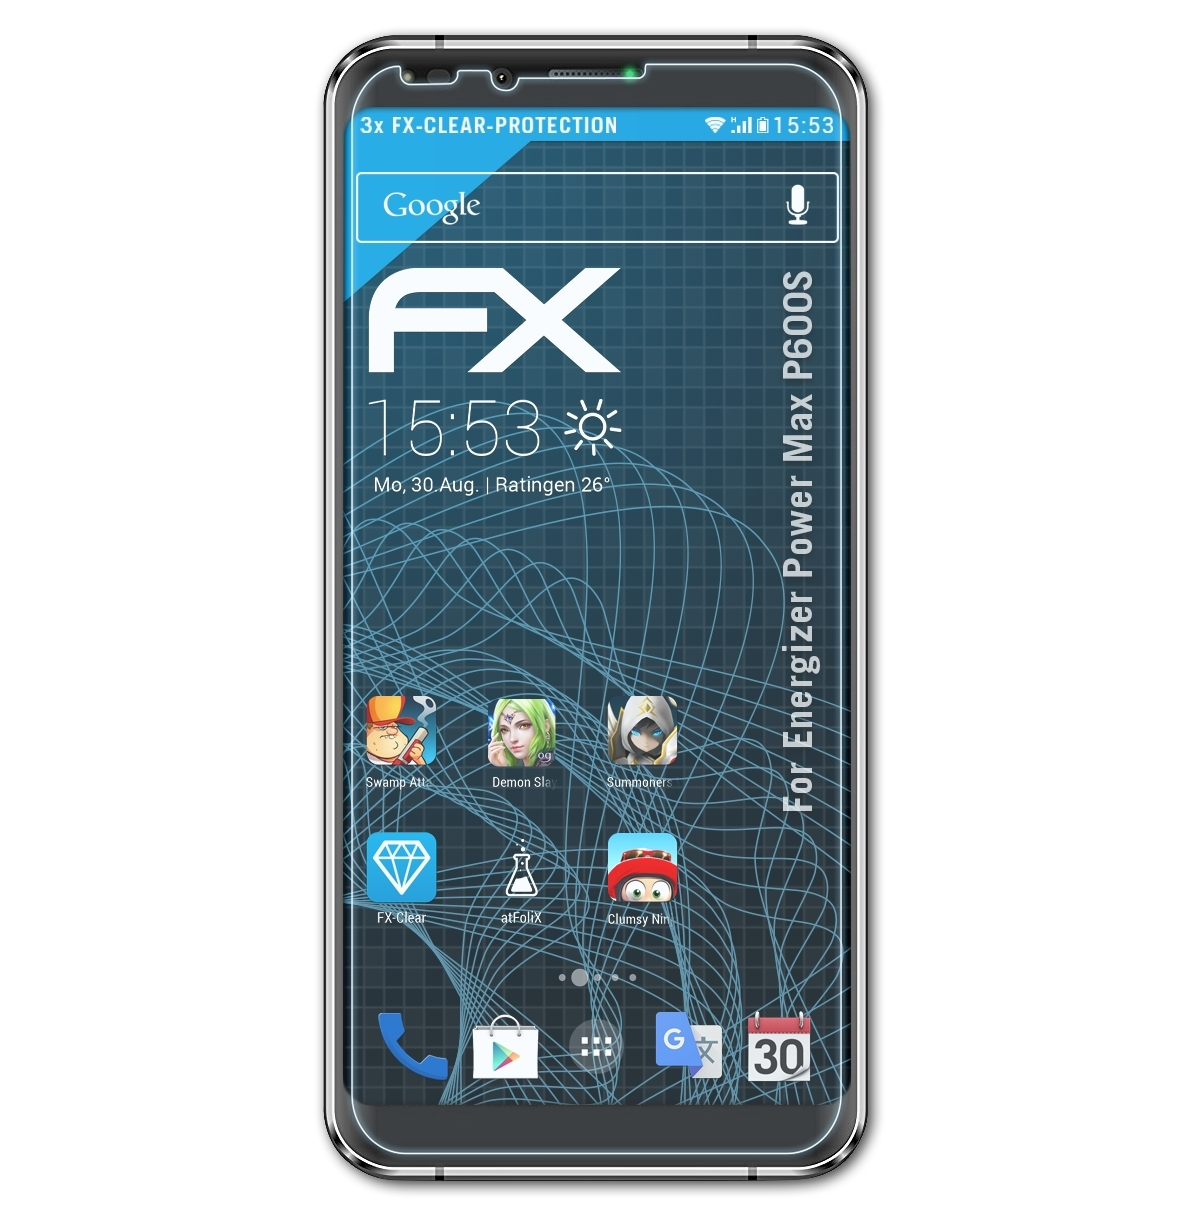 Power ATFOLIX 3x FX-Clear Max Energizer P600S) Displayschutz(für